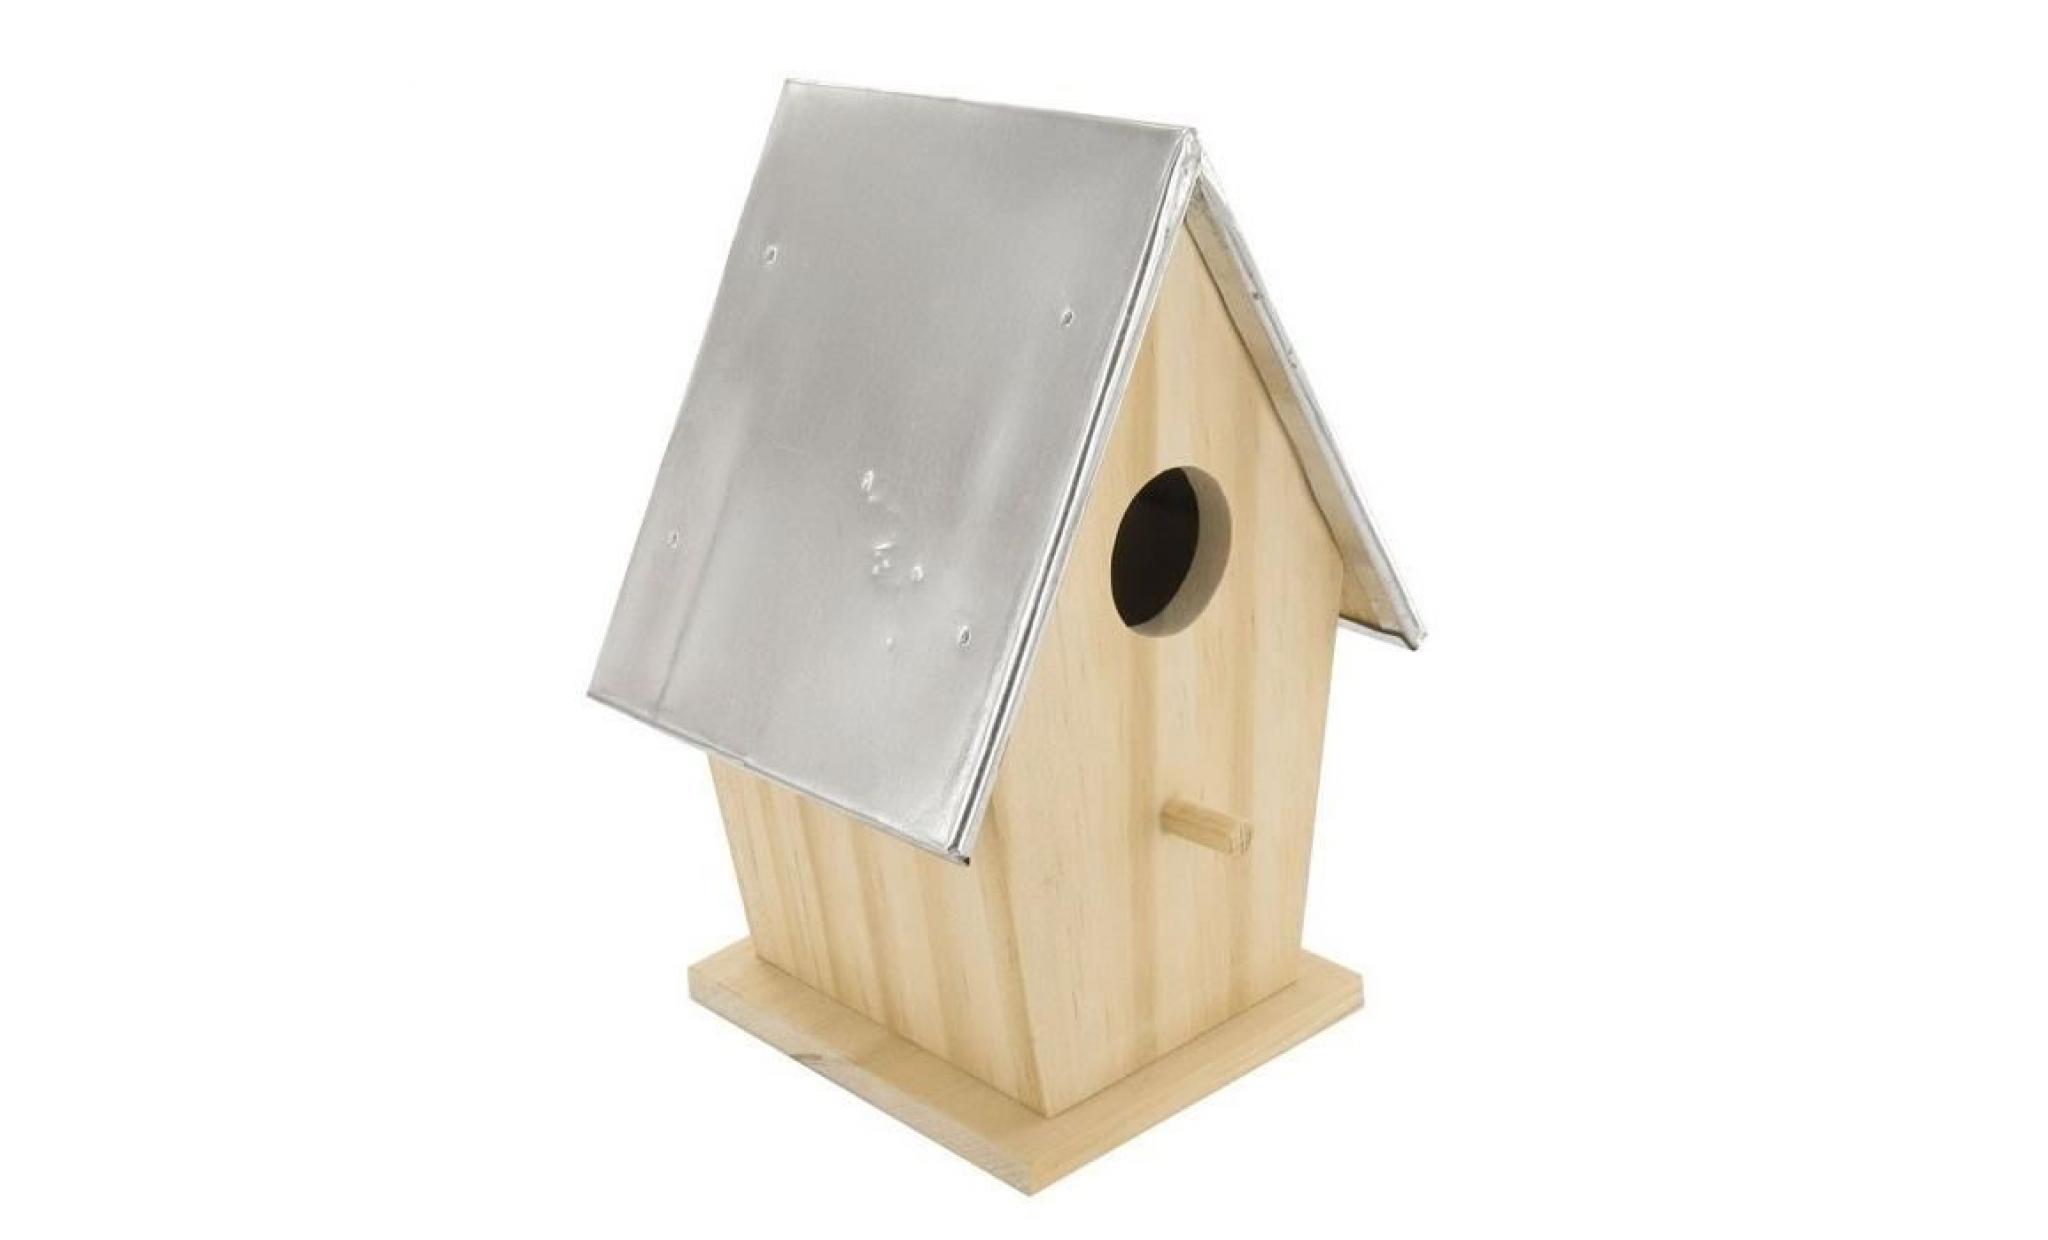 nichoir pour oiseau en bois brut avec toit en métal   h 18,5 x 11,5 cm